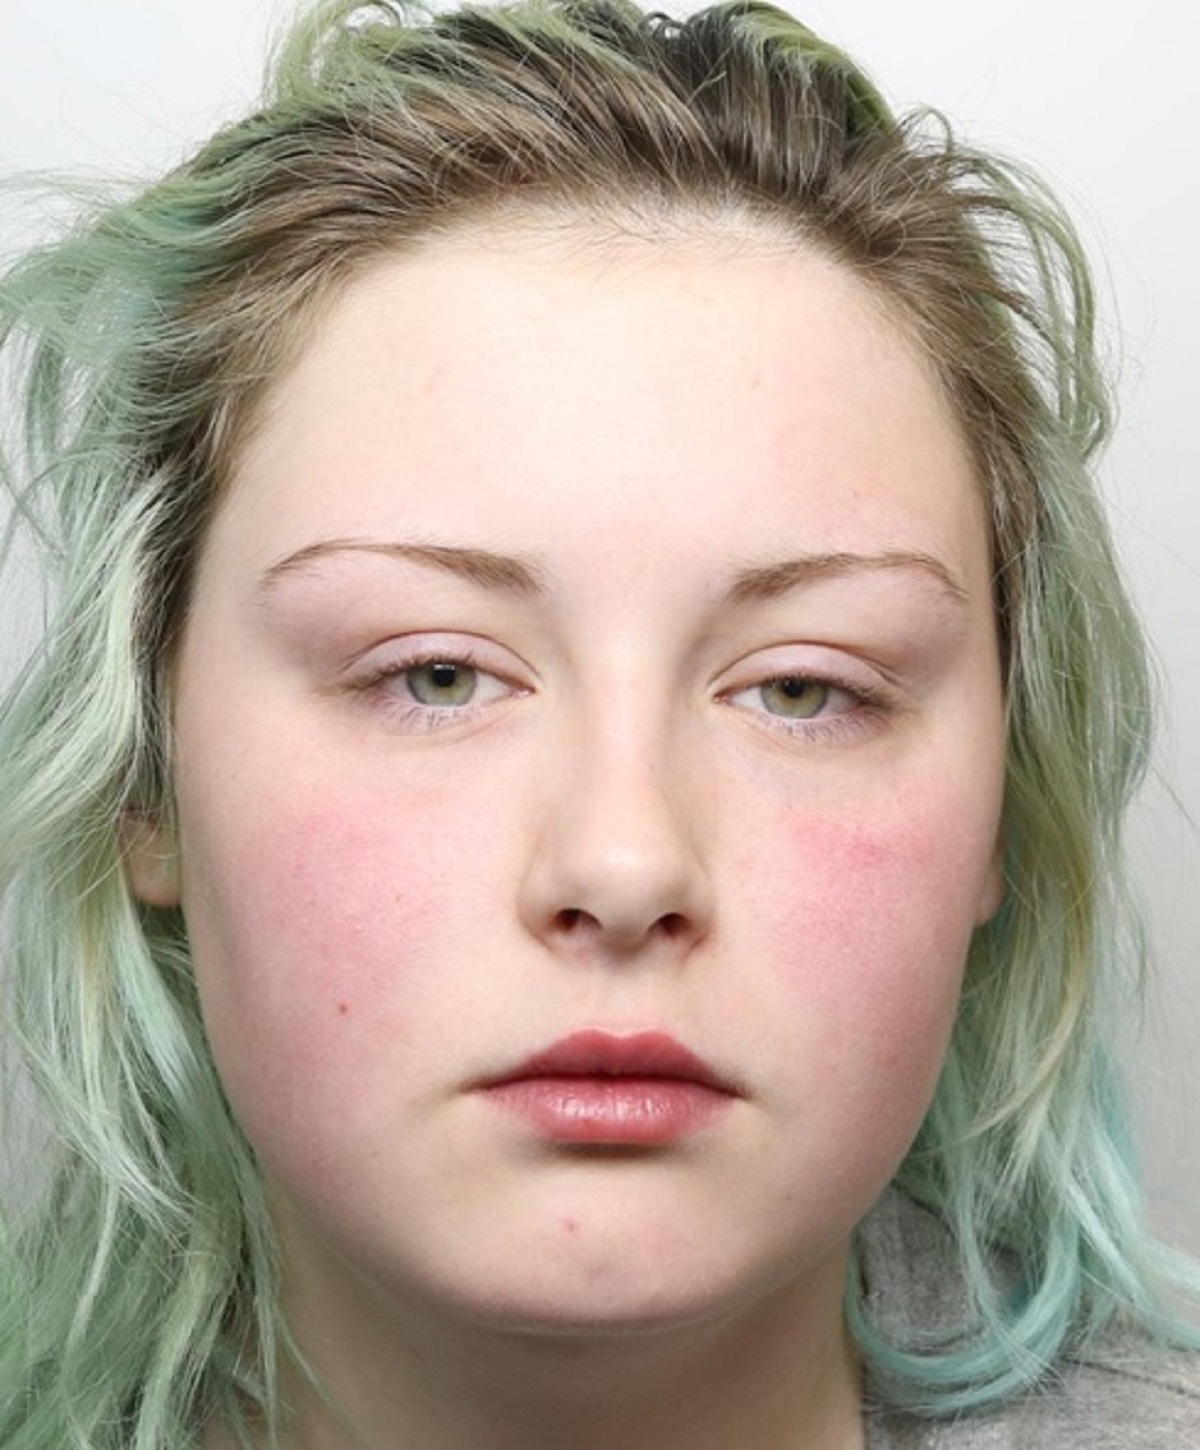 Police concern for missing Bradford teenager